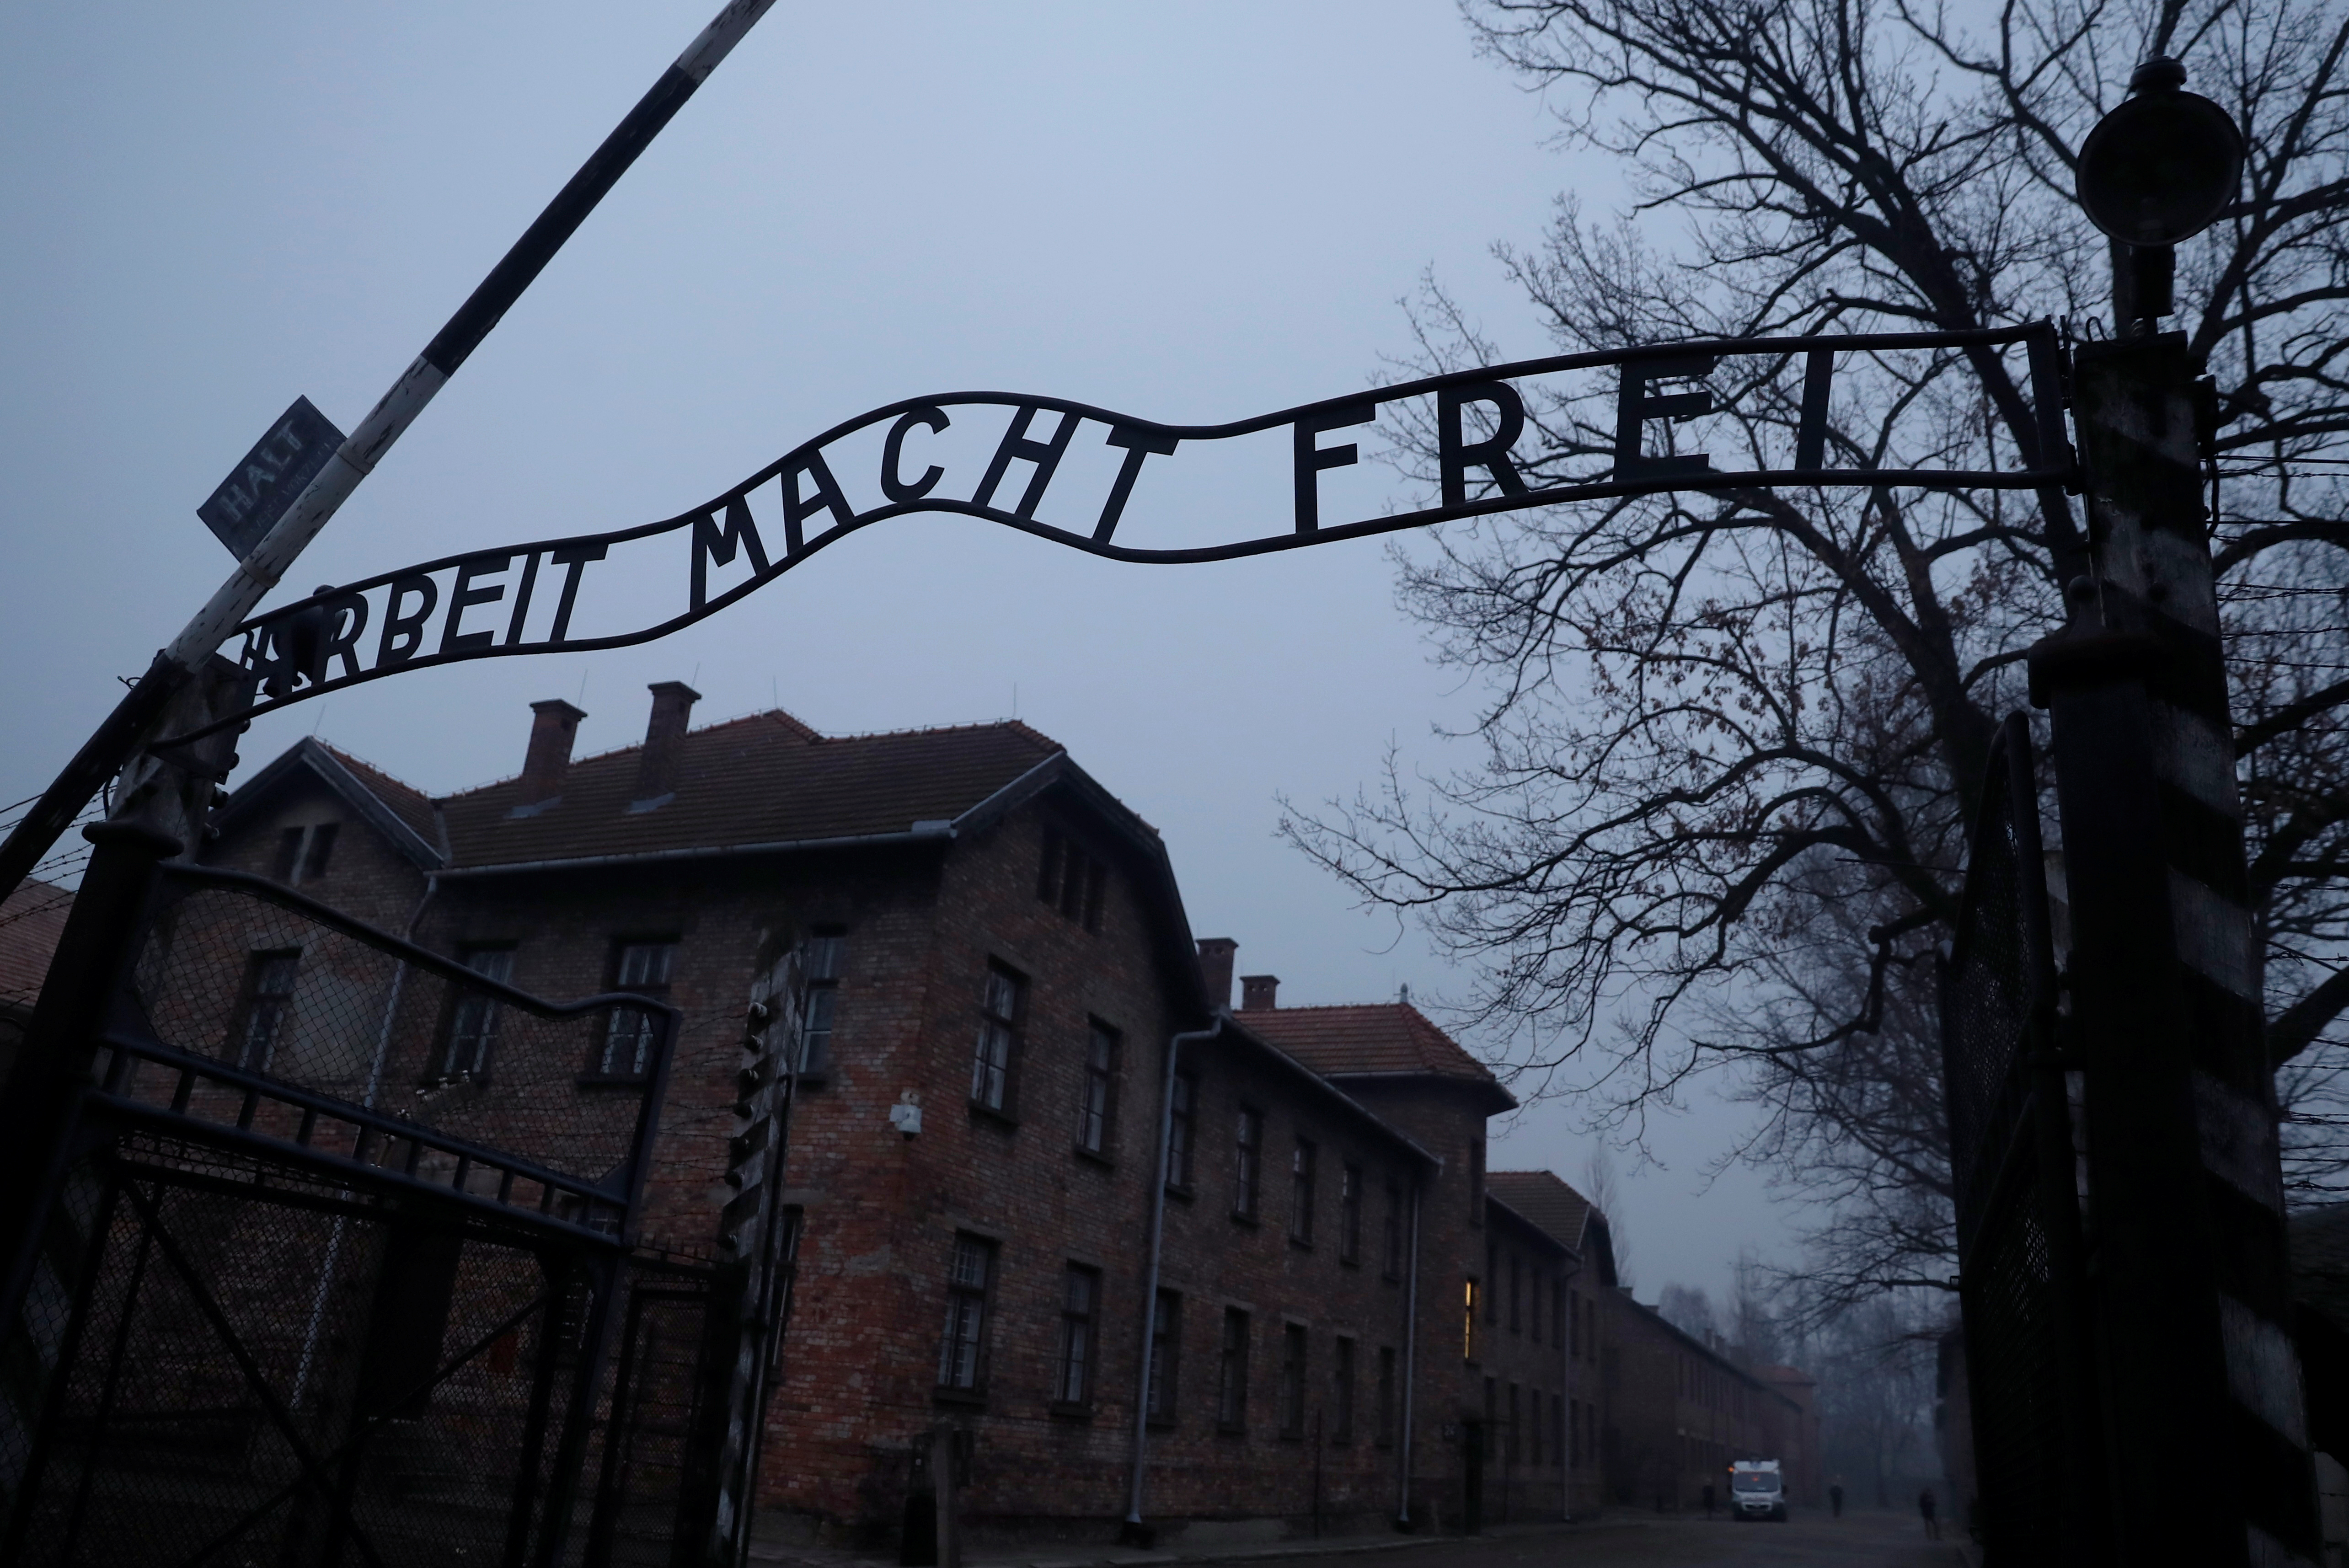 "El trabajo los hará libres", dice el cartel de hierro a la entrada de Auschwitz (REUTERS/Kacper Pempel)